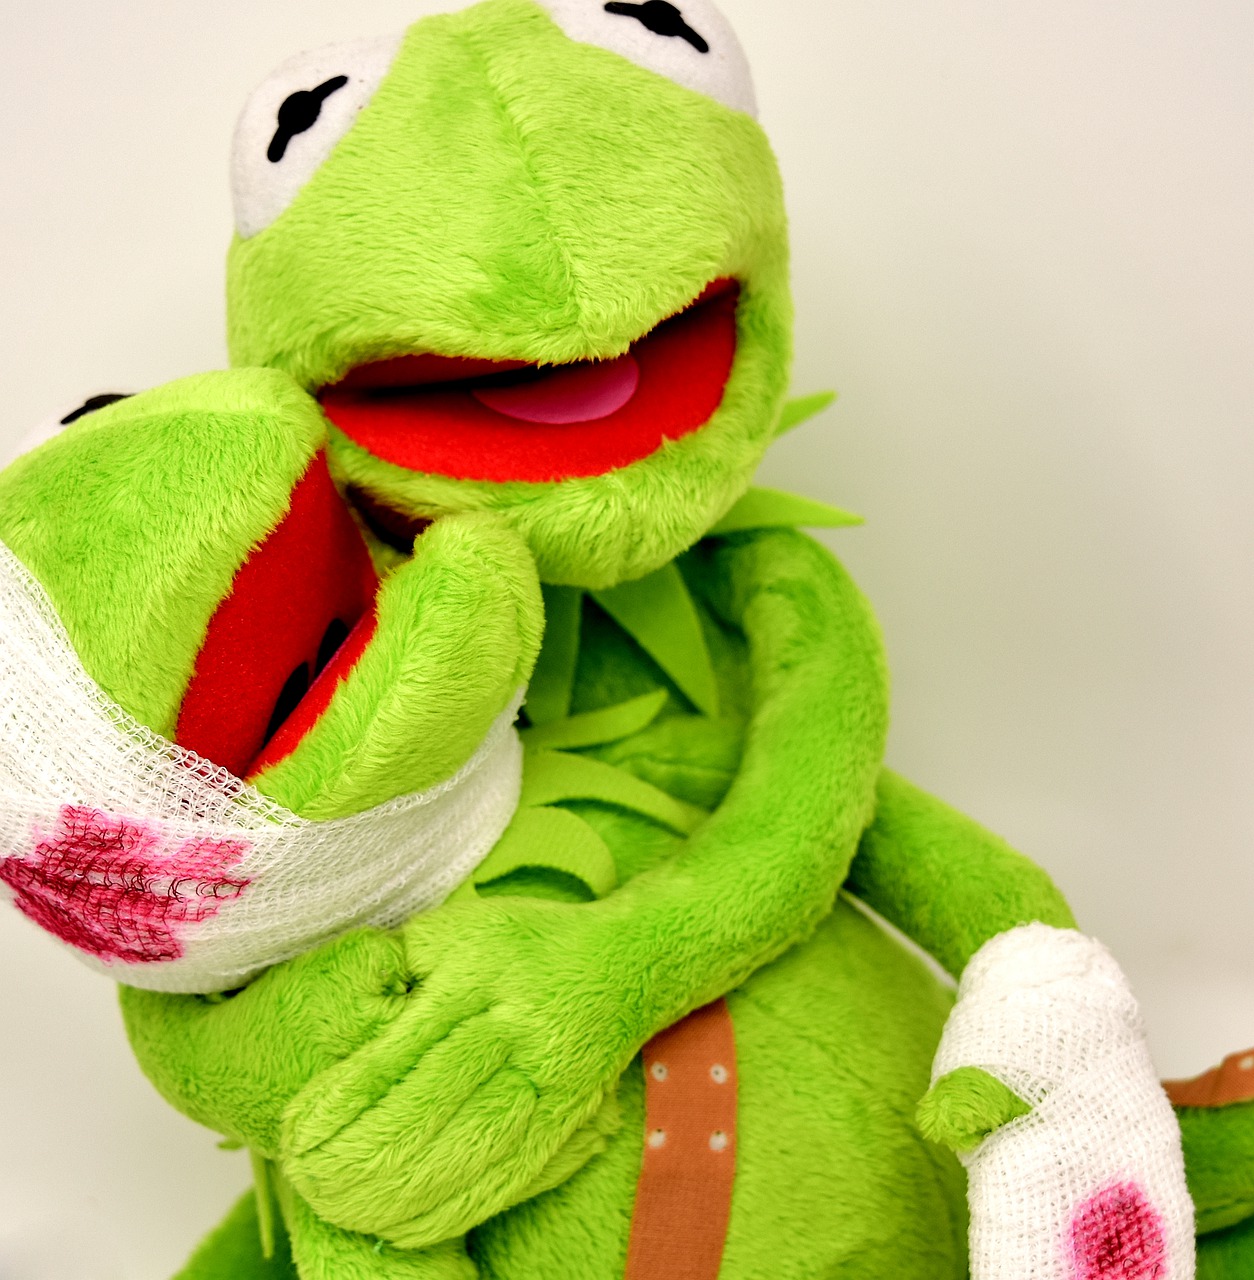 frogs injured kermit free photo